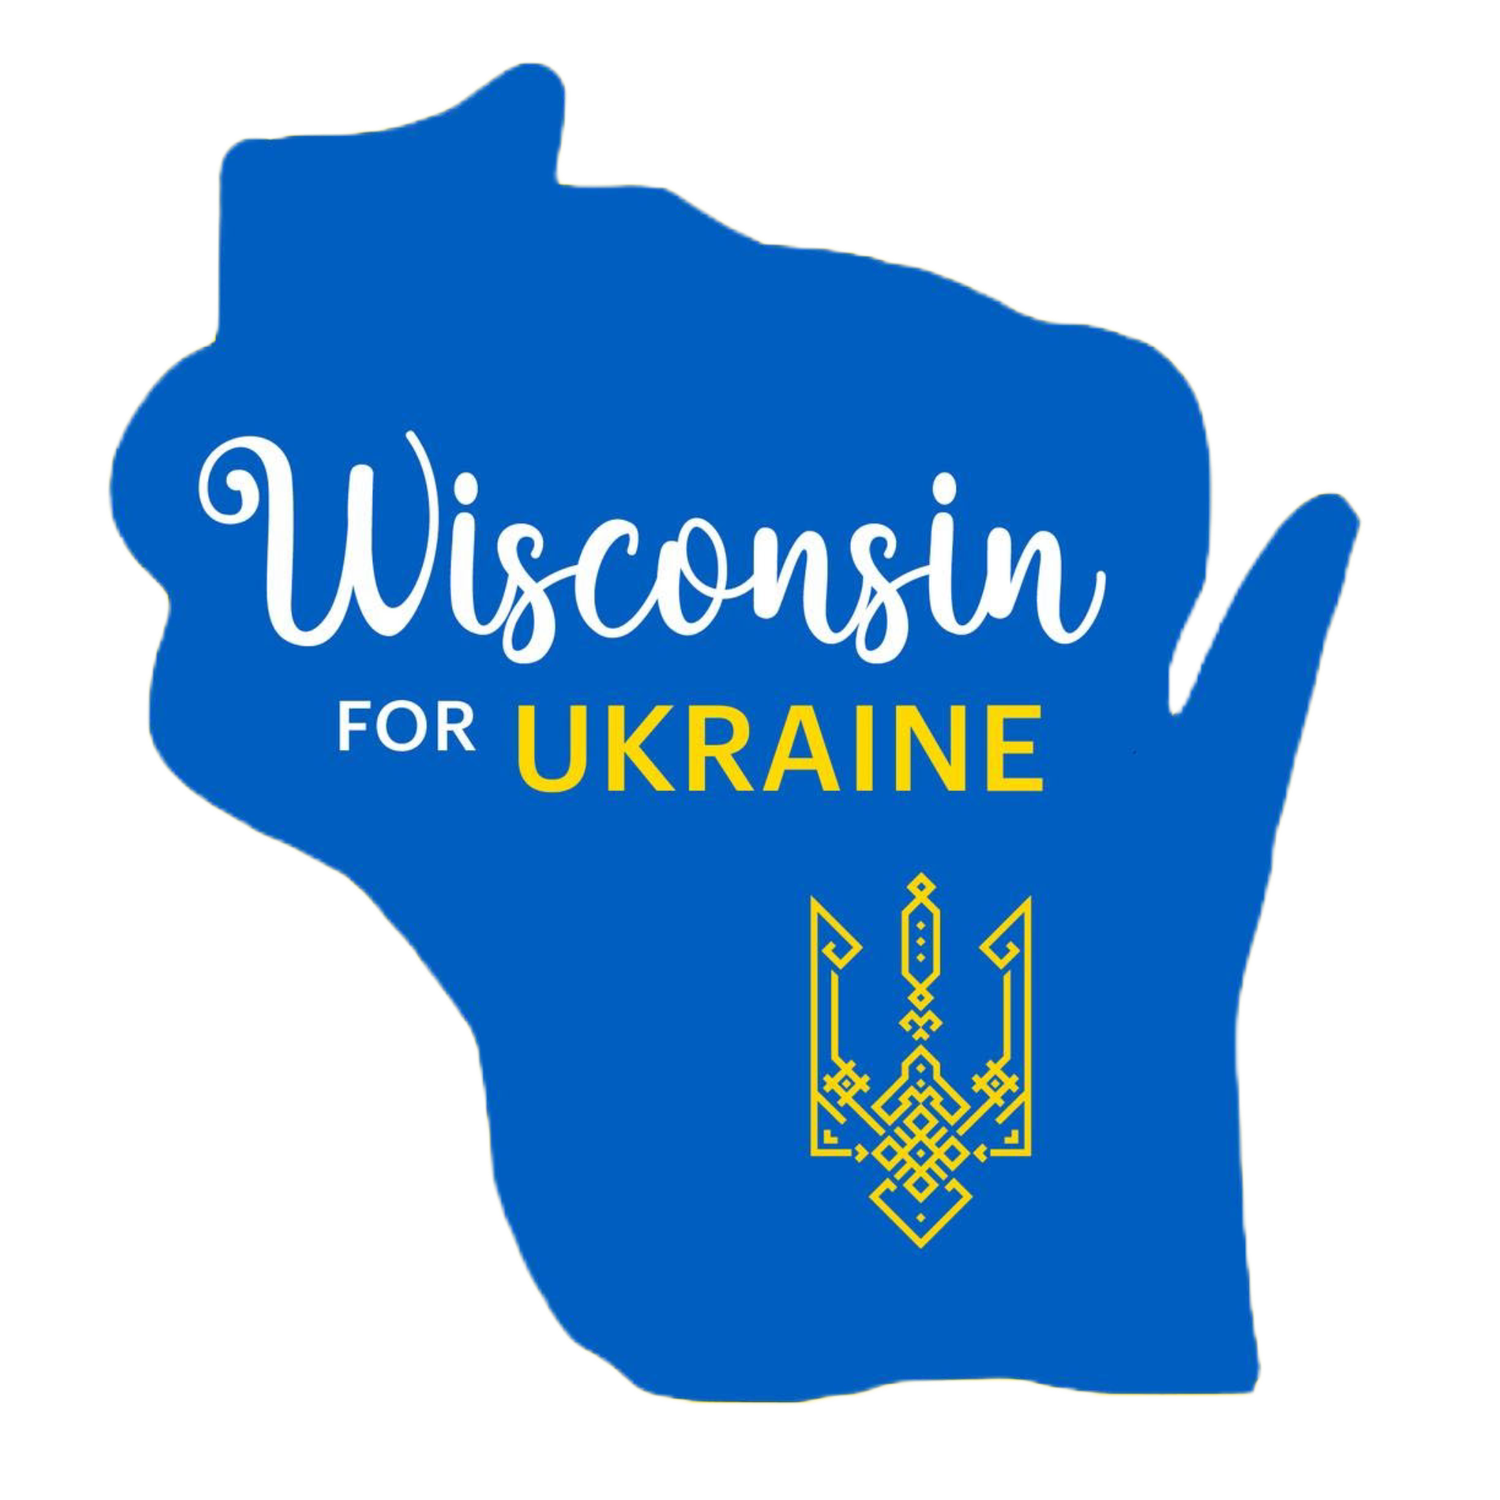 Wisconsin for Ukraine